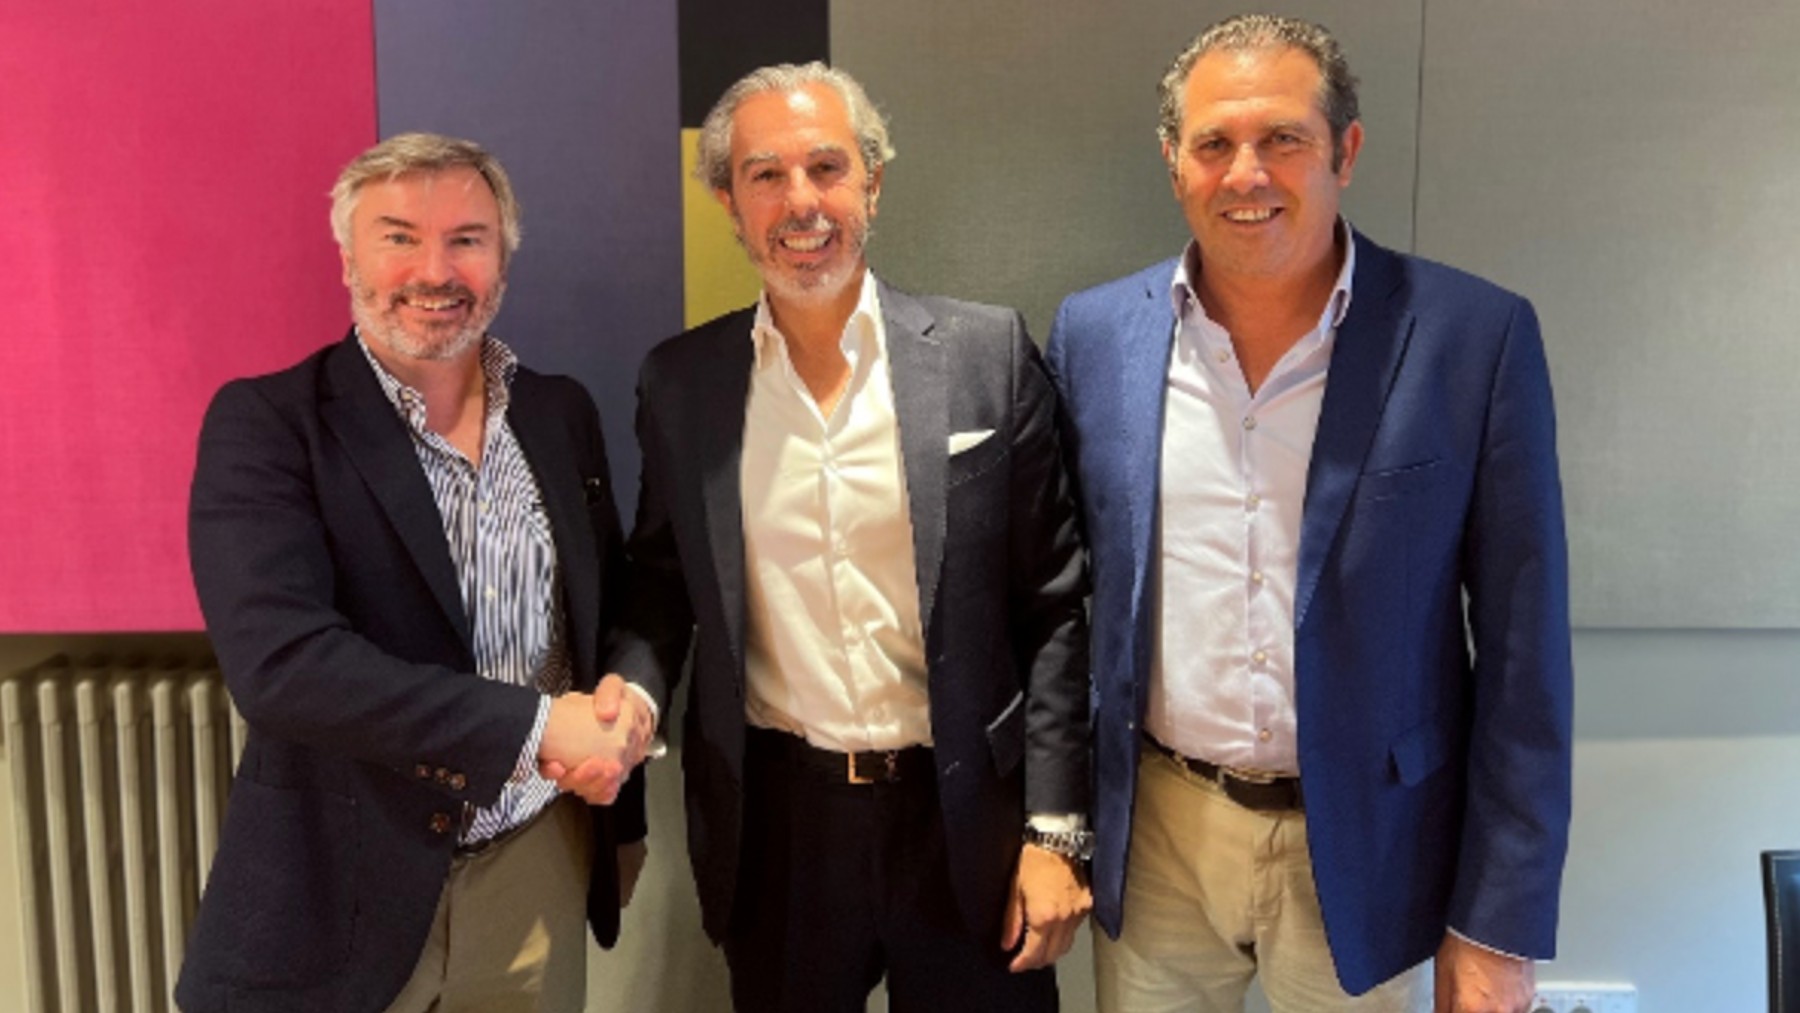 Alexandre Pierron Darbonne, CEO de Label Investments, y Francisco Casas y José Muñoz Torrados, fundadores de Emovili